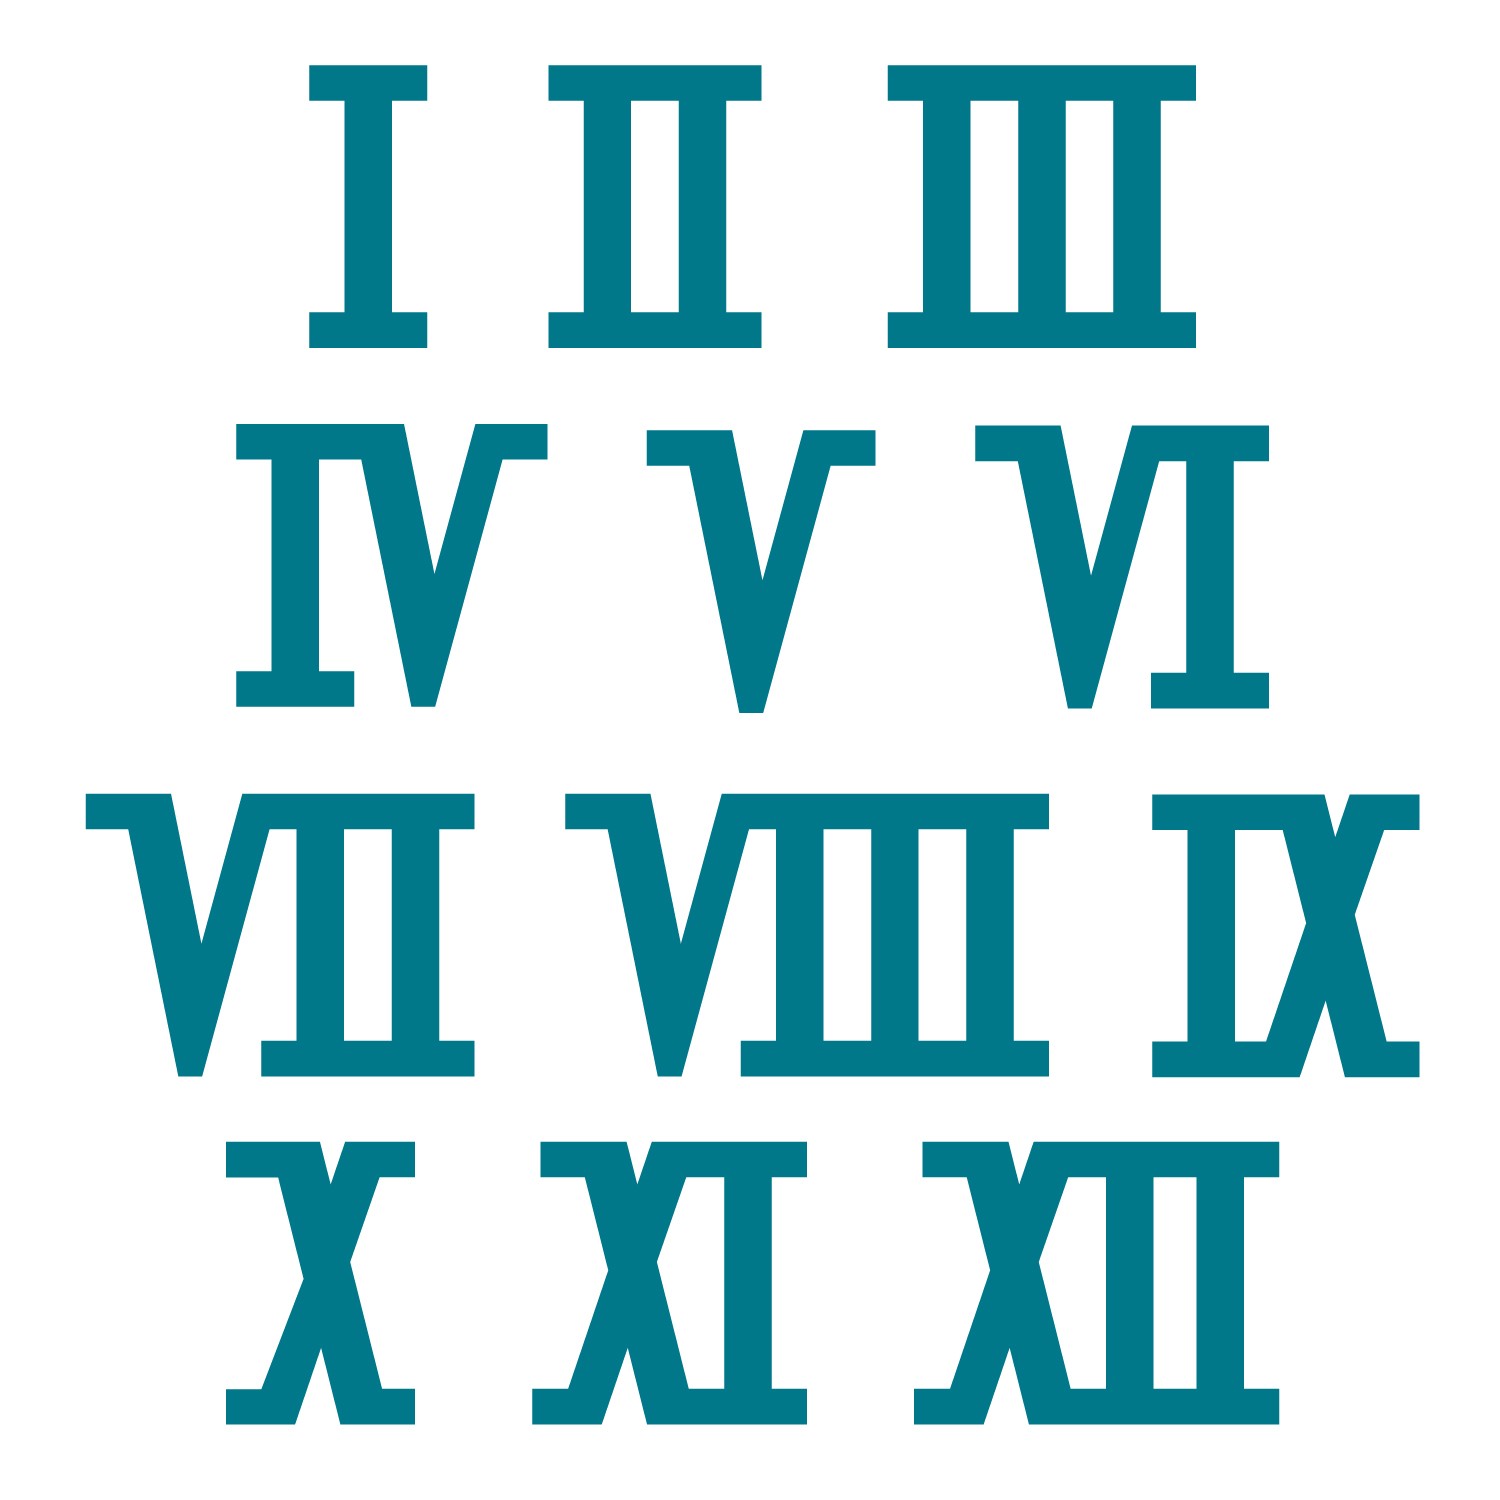 6 in roman numerals